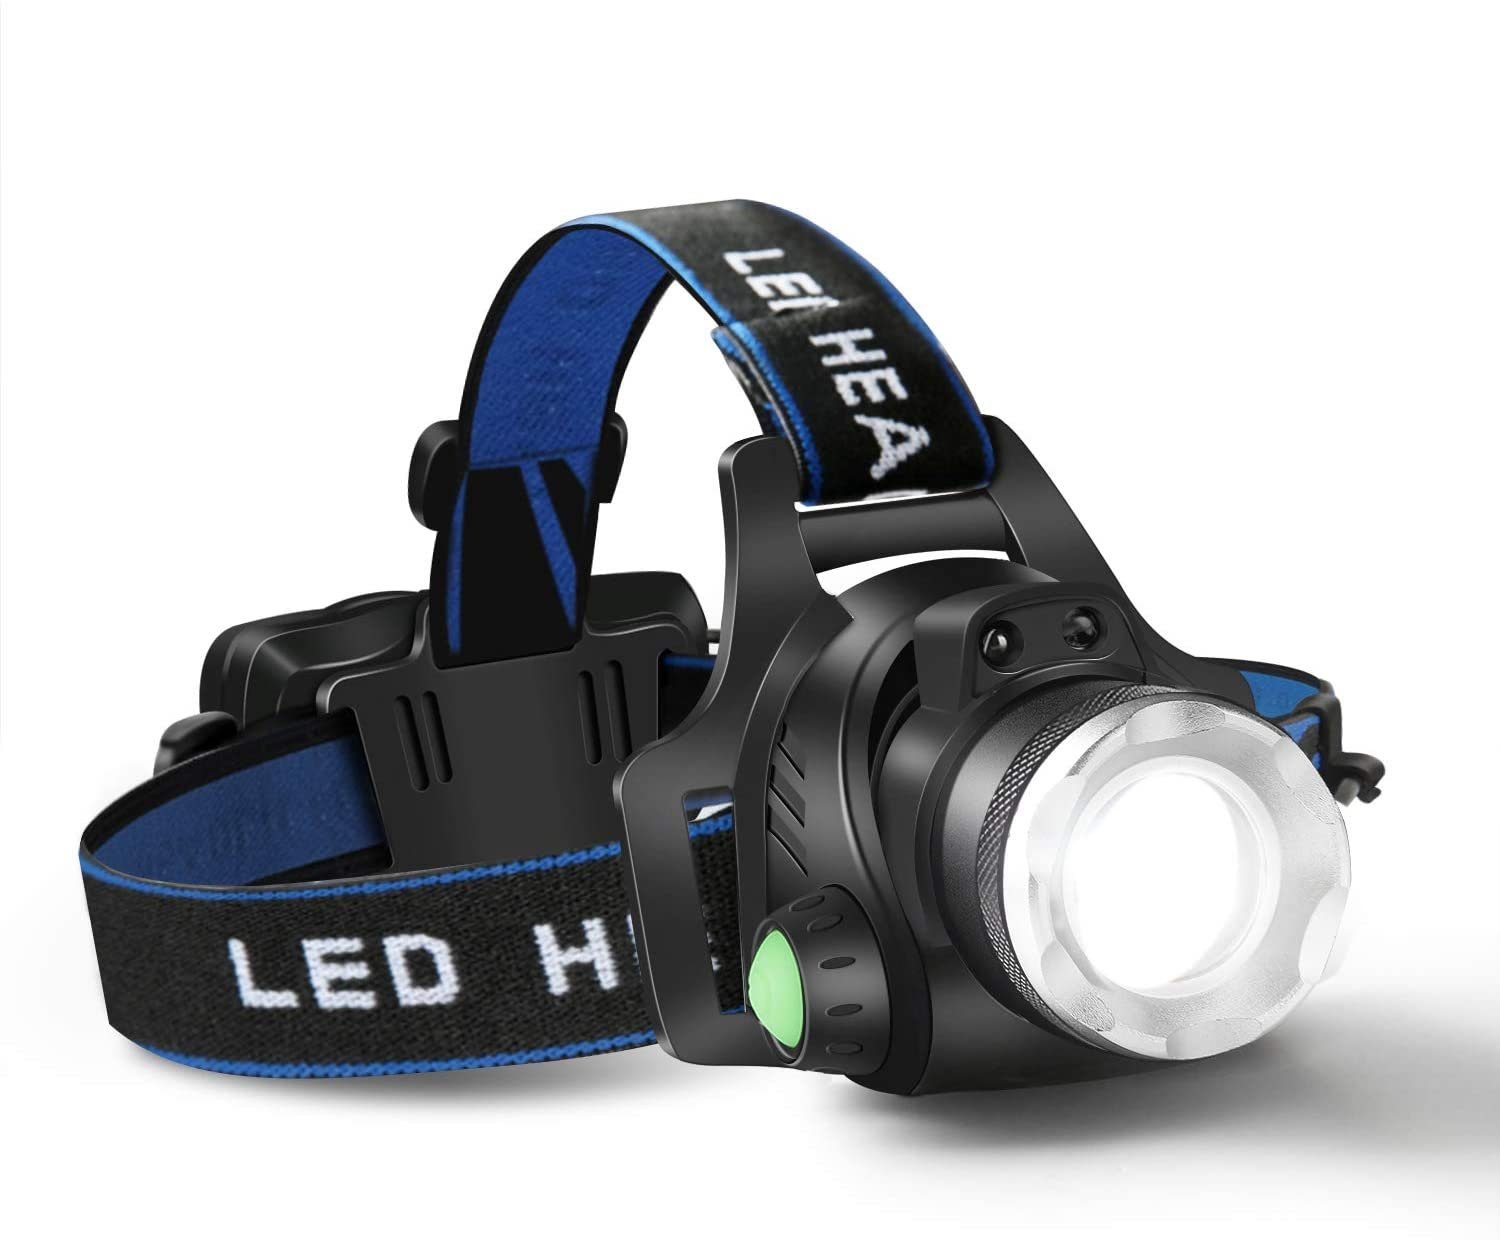 LED Neueste Stirnlampe USB Wiederaufladbare Mini Stirnlampe Kopflampe ZKNEN 